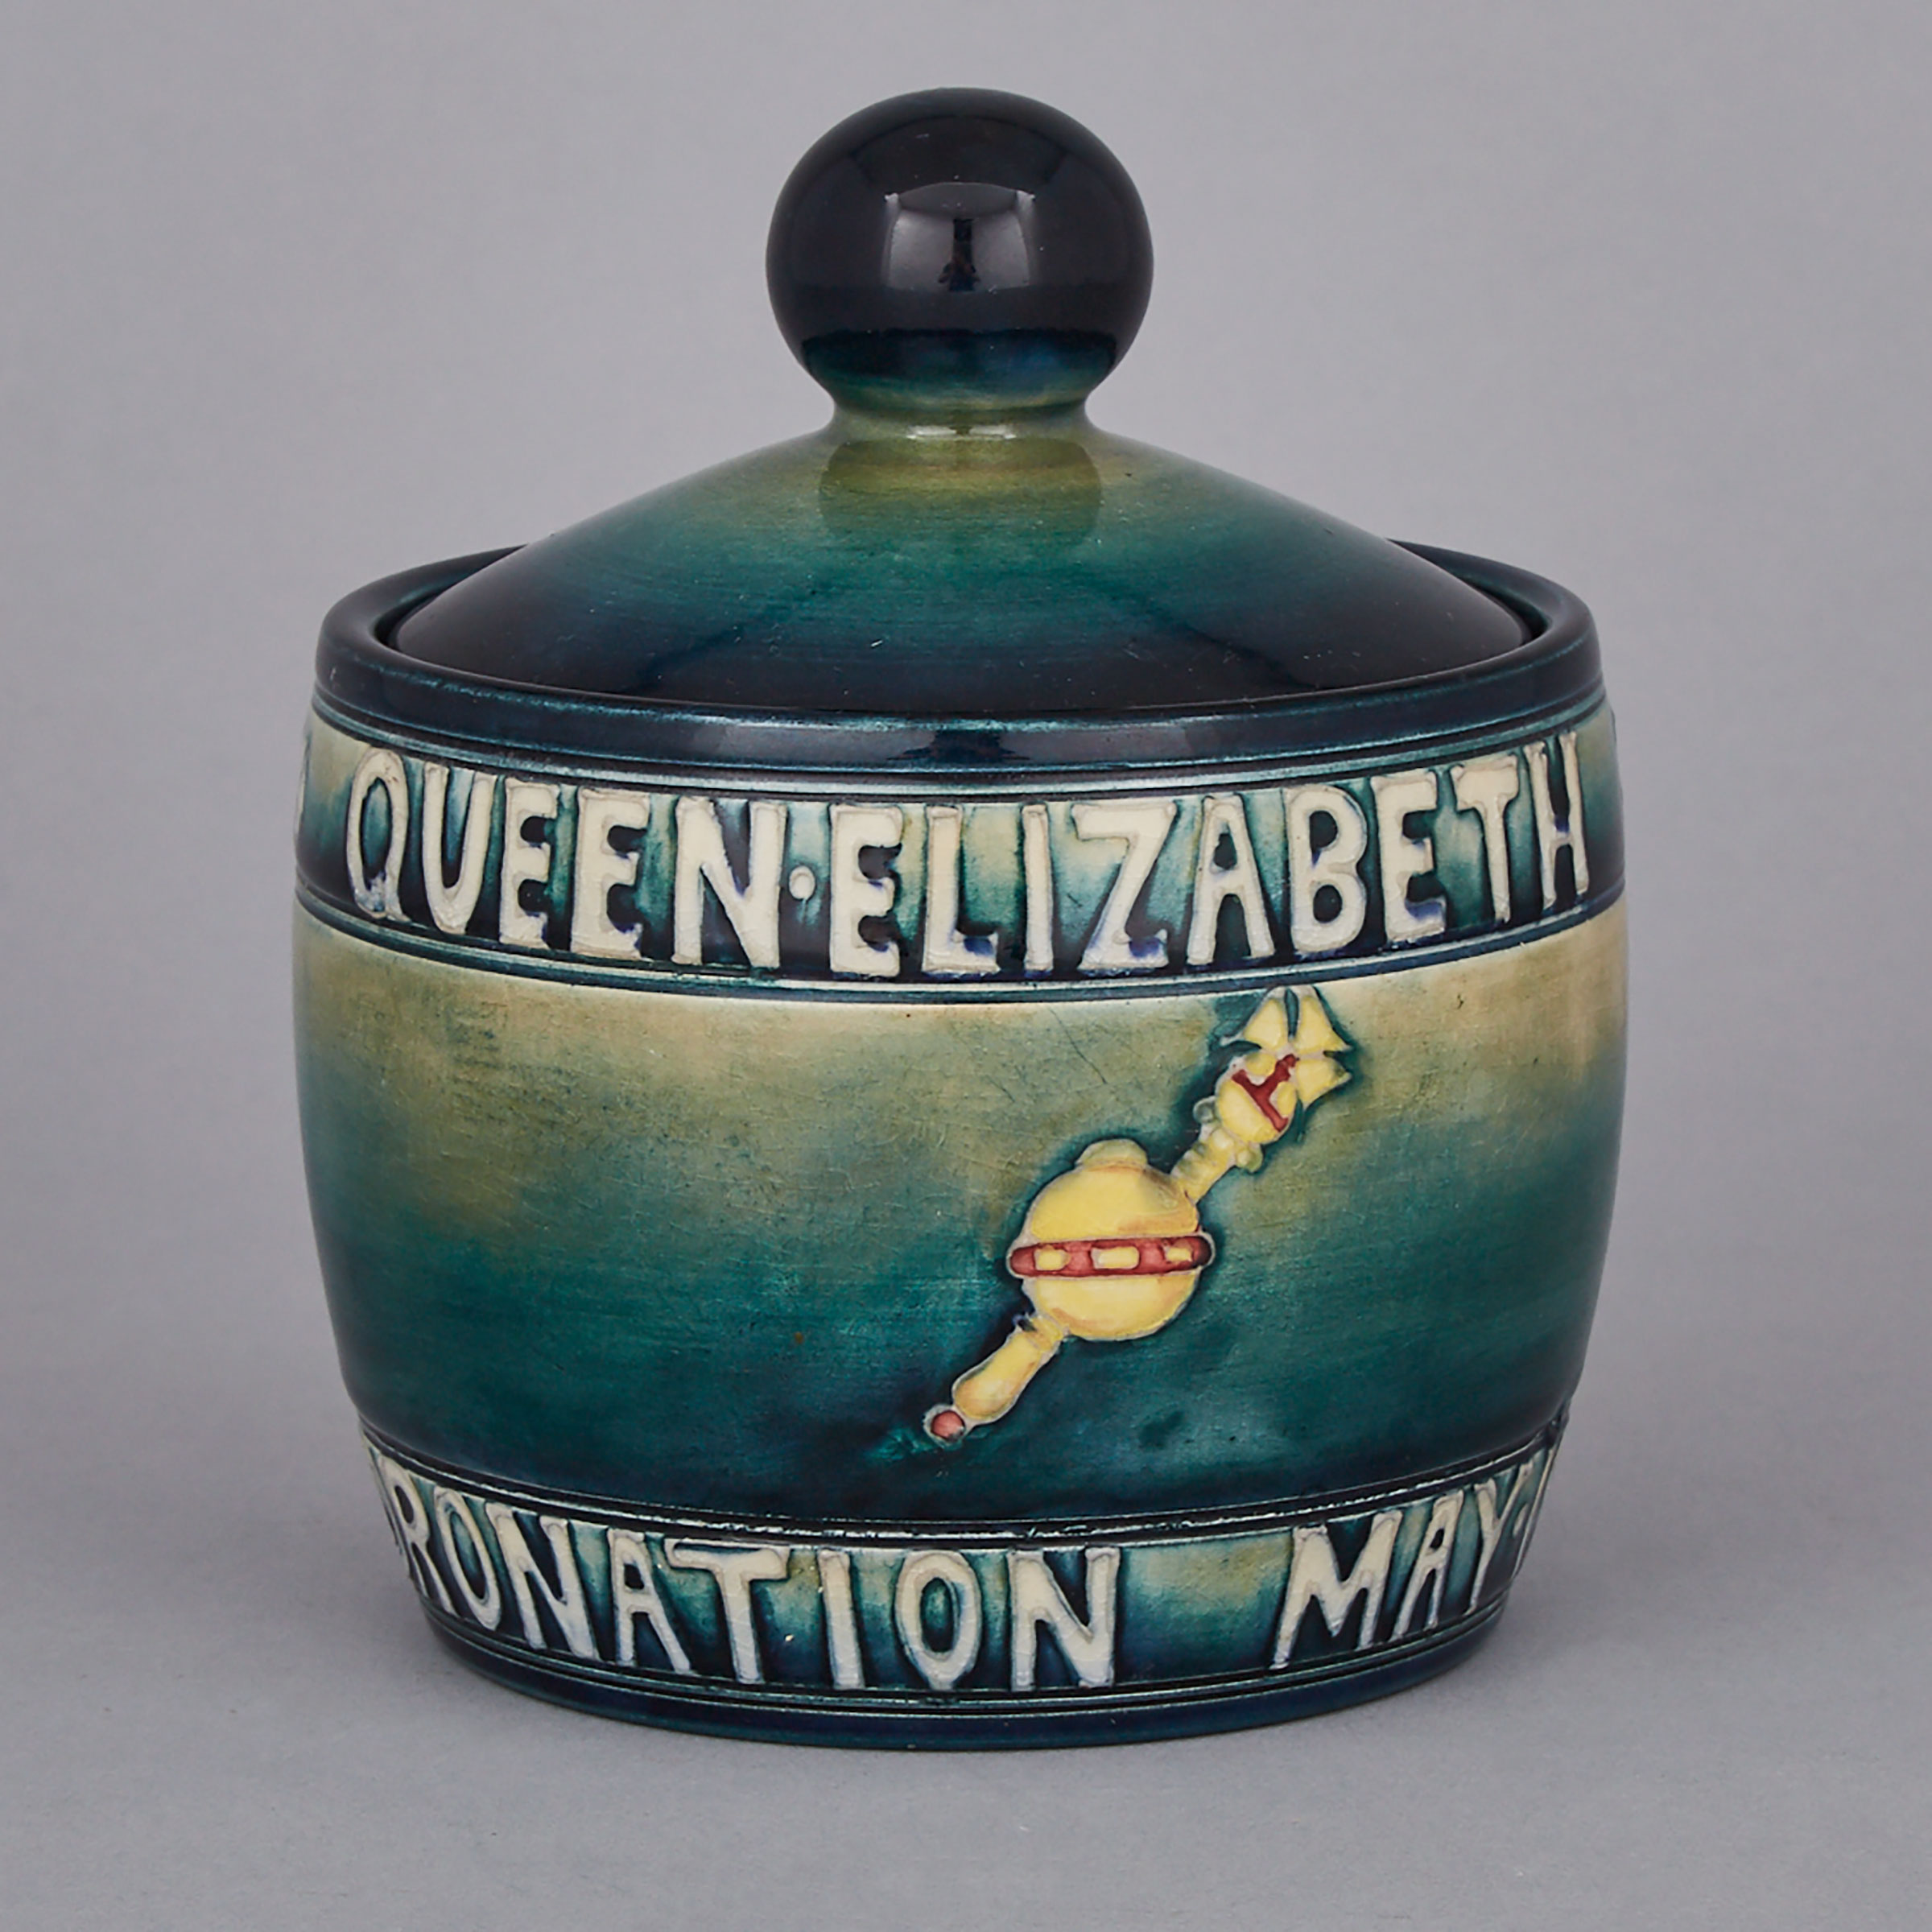 Moorcroft Queen Elizabeth and King George VI Coronation Commemorative Tobacco Jar, 1937